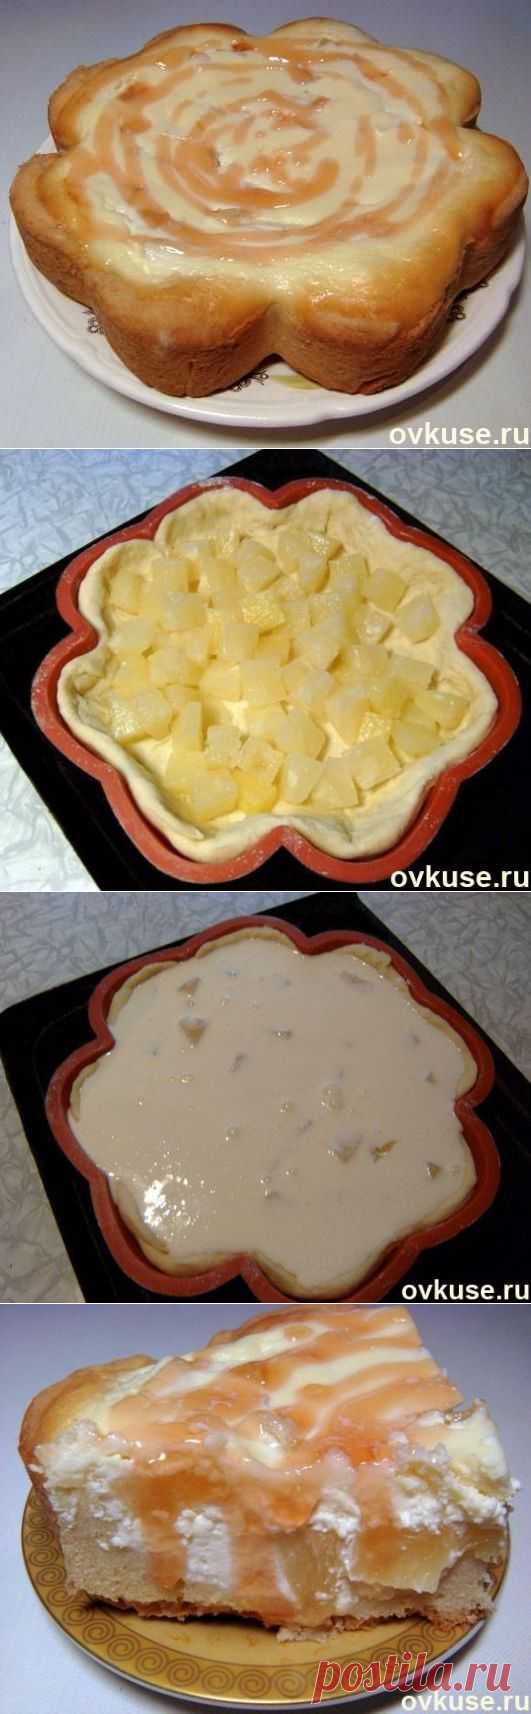 Творожный пирог с ананасами - Простые рецепты Овкусе.ру